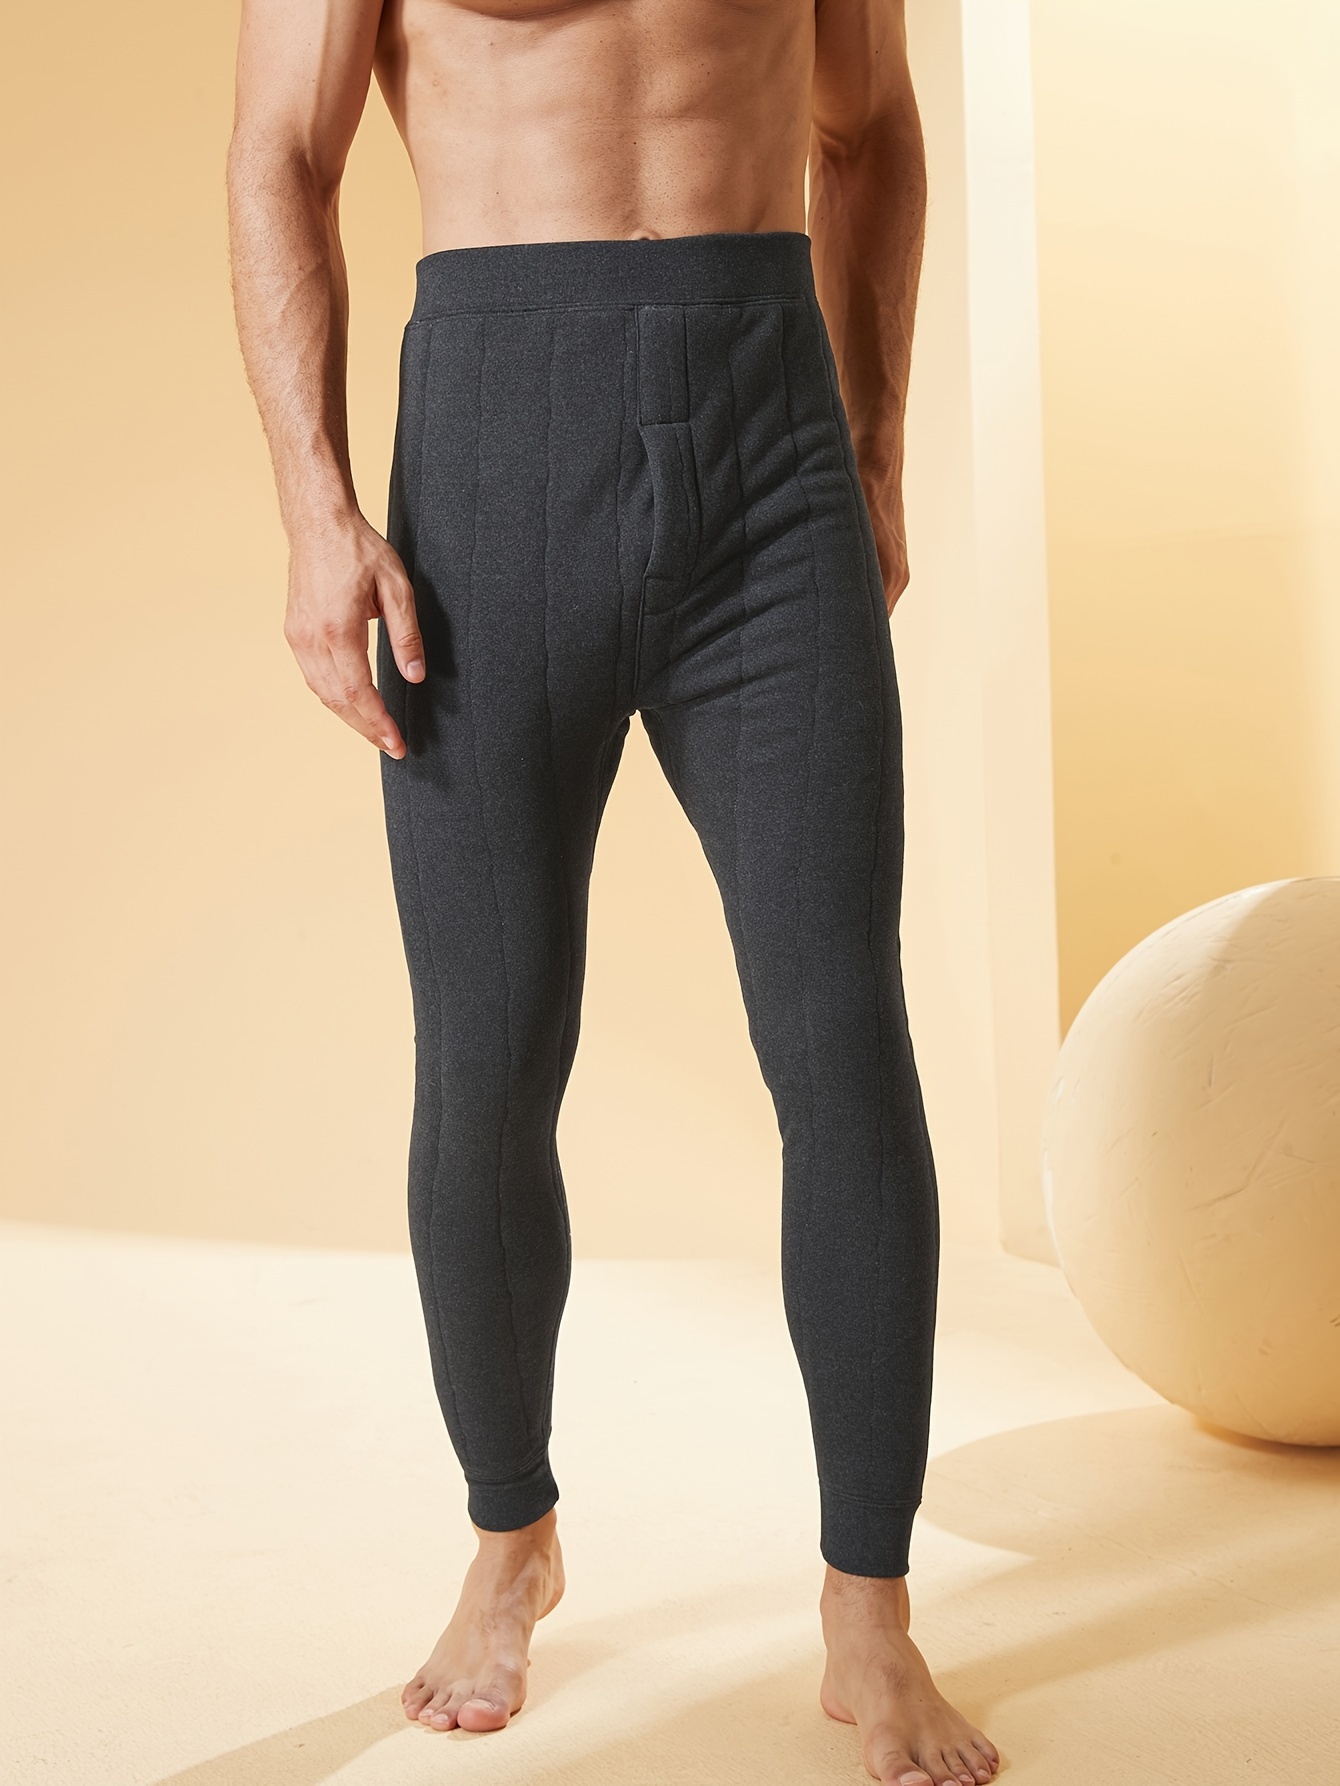 Men's Thermal Underwear Pants Thickened Fleece Warm Leggings - Temu